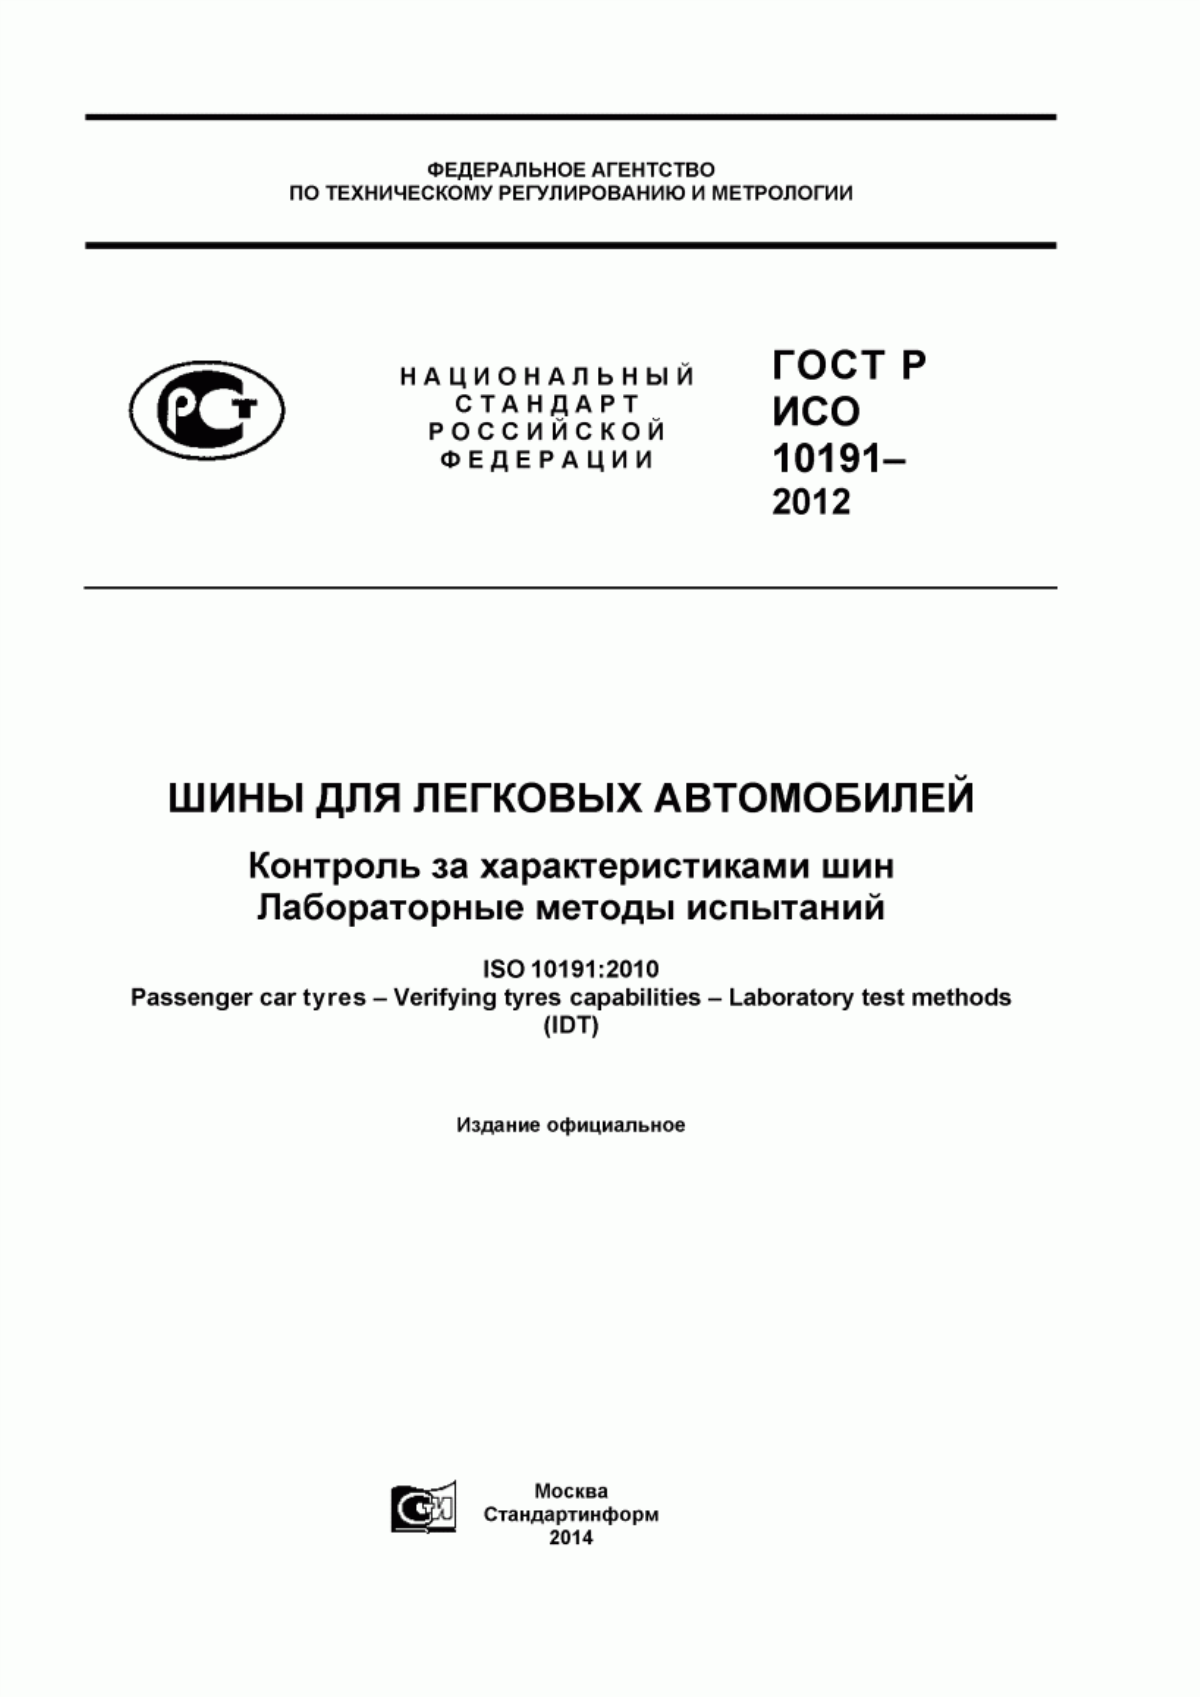 ГОСТ Р ИСО 10191-2012 Шины для легковых автомобилей. Контроль за характеристиками шин. Лабораторные методы испытаний